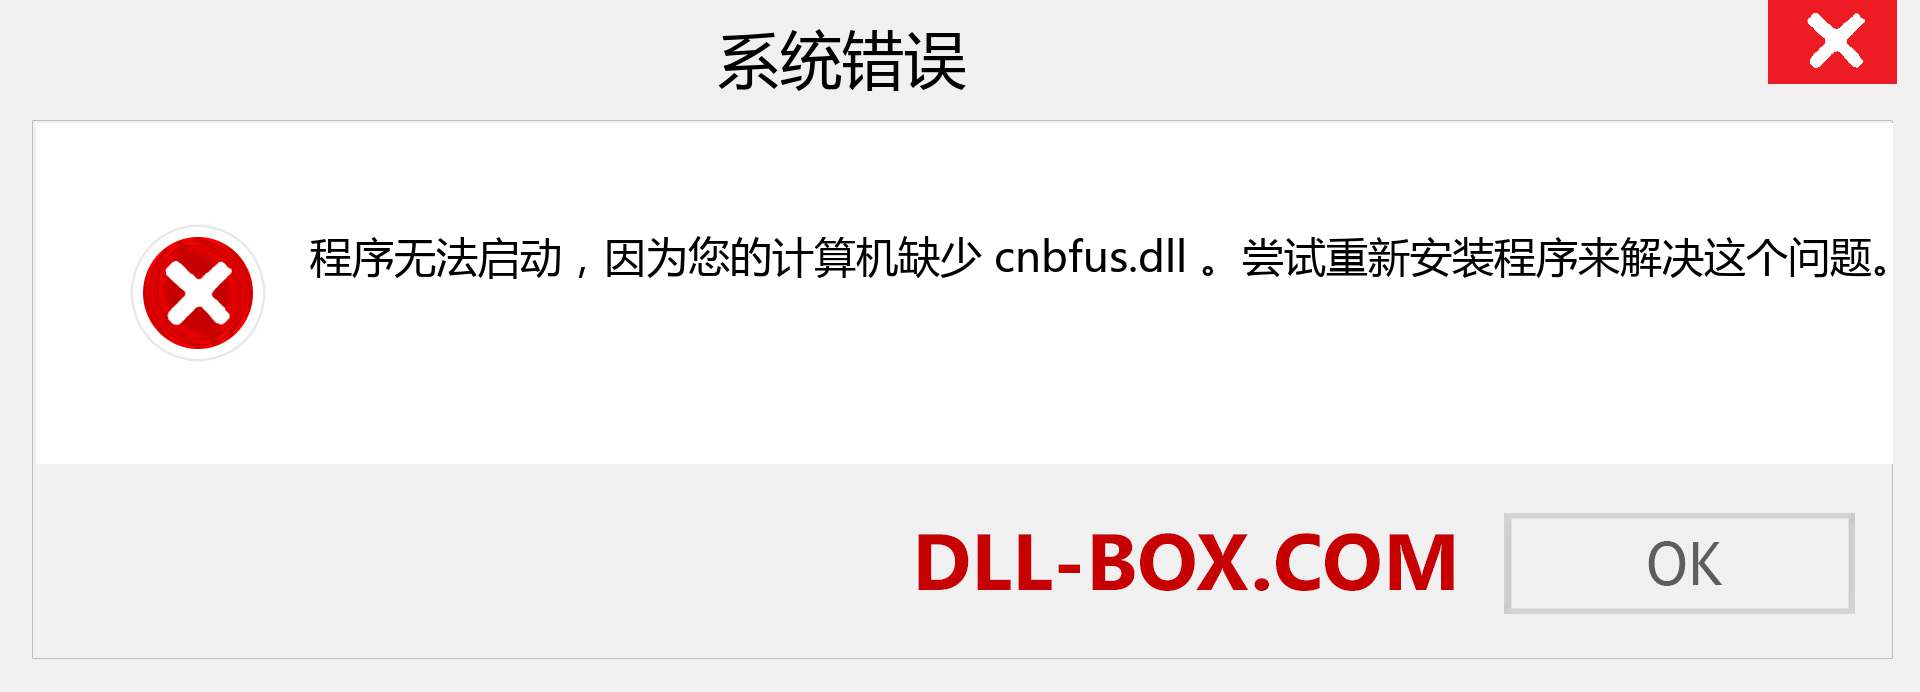 cnbfus.dll 文件丢失？。 适用于 Windows 7、8、10 的下载 - 修复 Windows、照片、图像上的 cnbfus dll 丢失错误